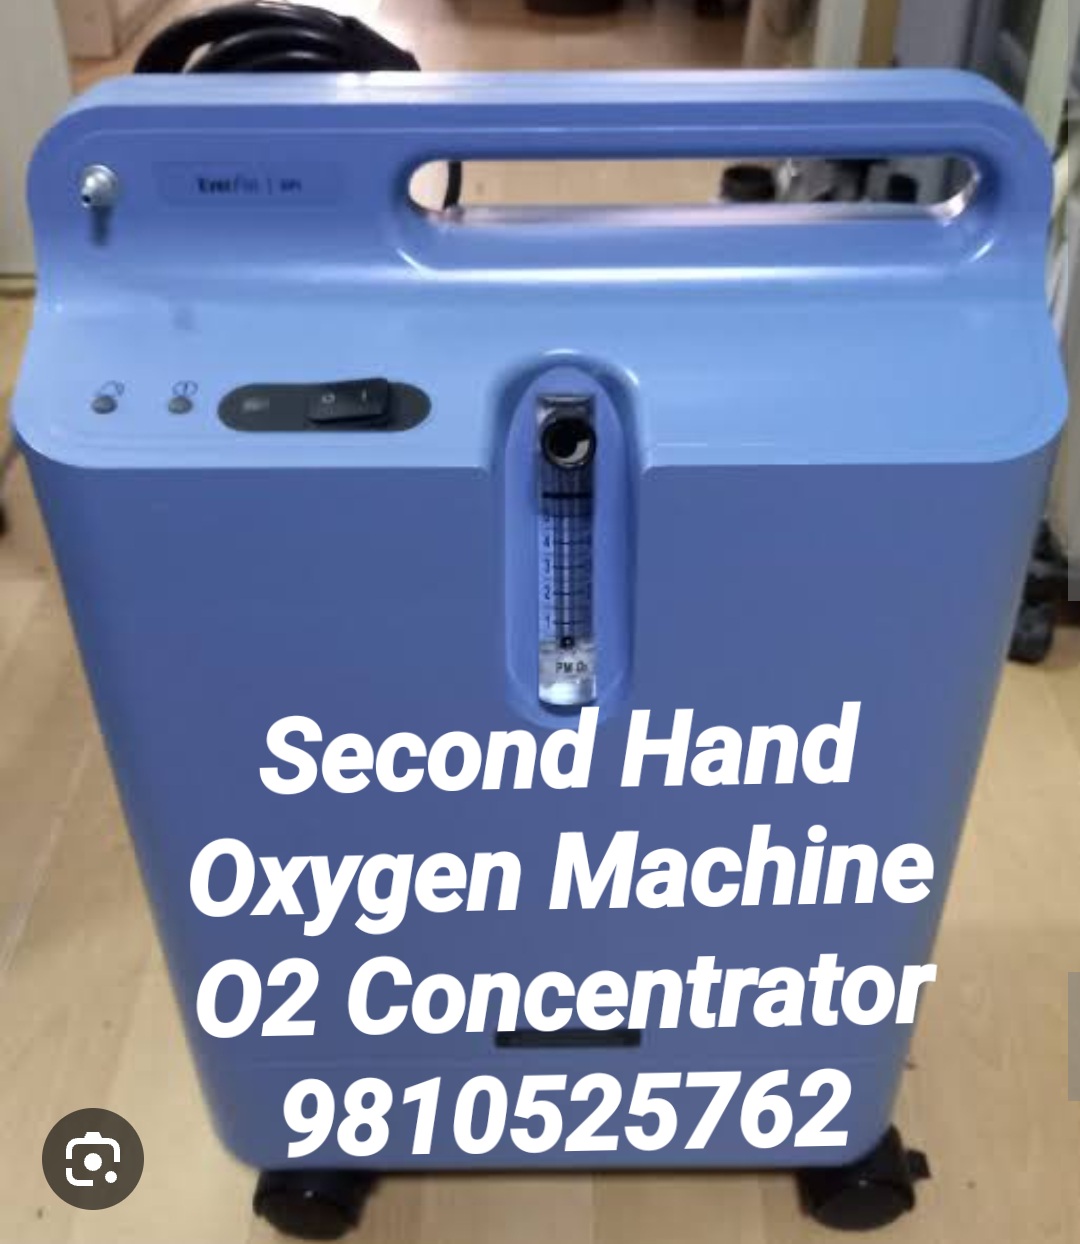 SECOND HAND OXYGEN MACHINE SALE 9810525762